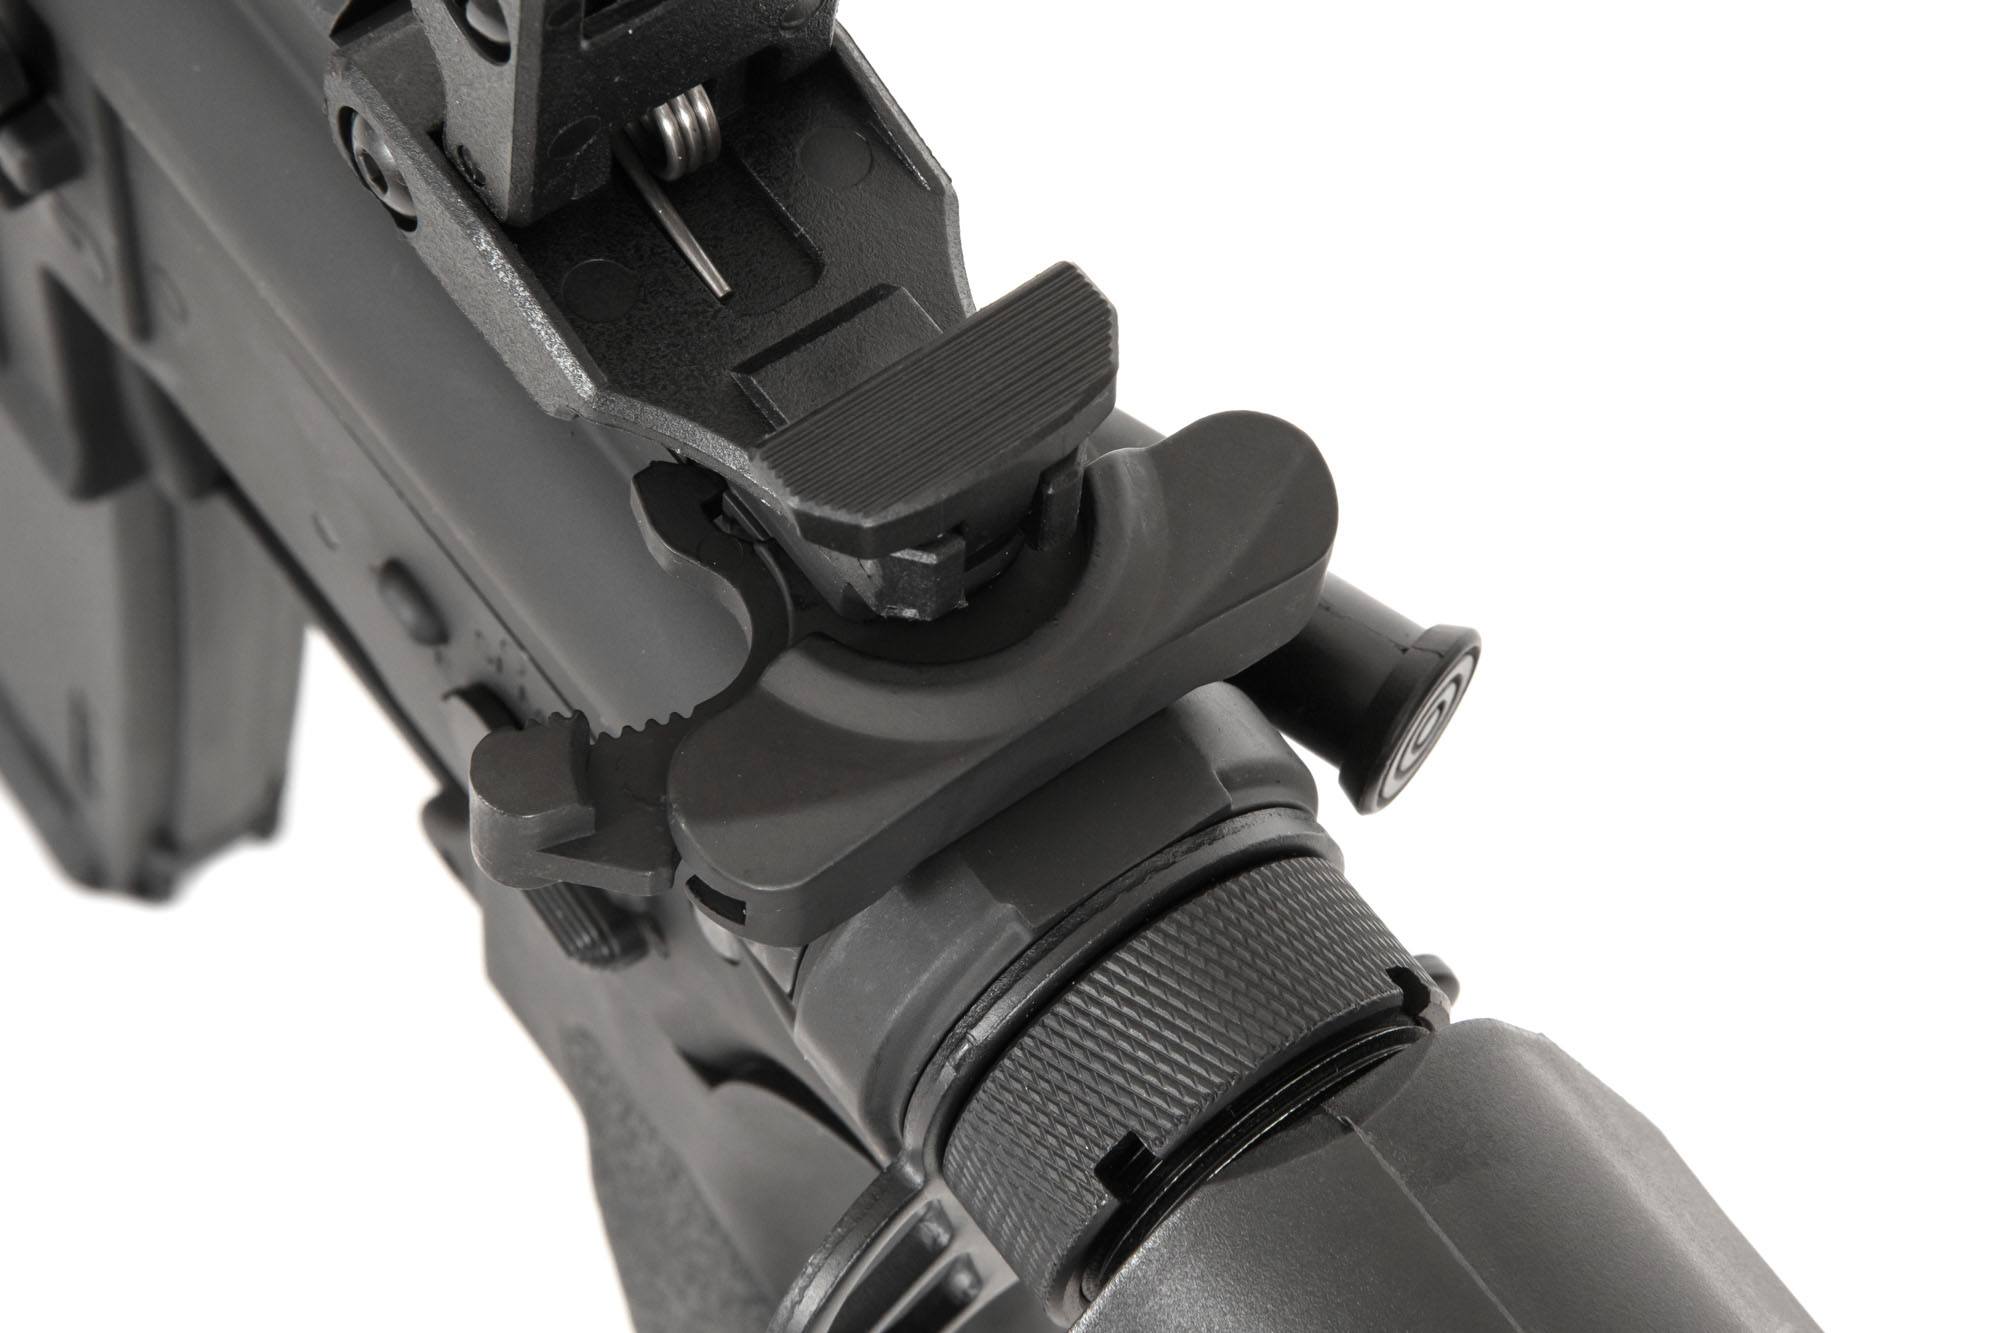 RRA SA-E03 EDGE ™ 2.0 Carbine Replica - Black by Specna Arms on Airsoft Mania Europe